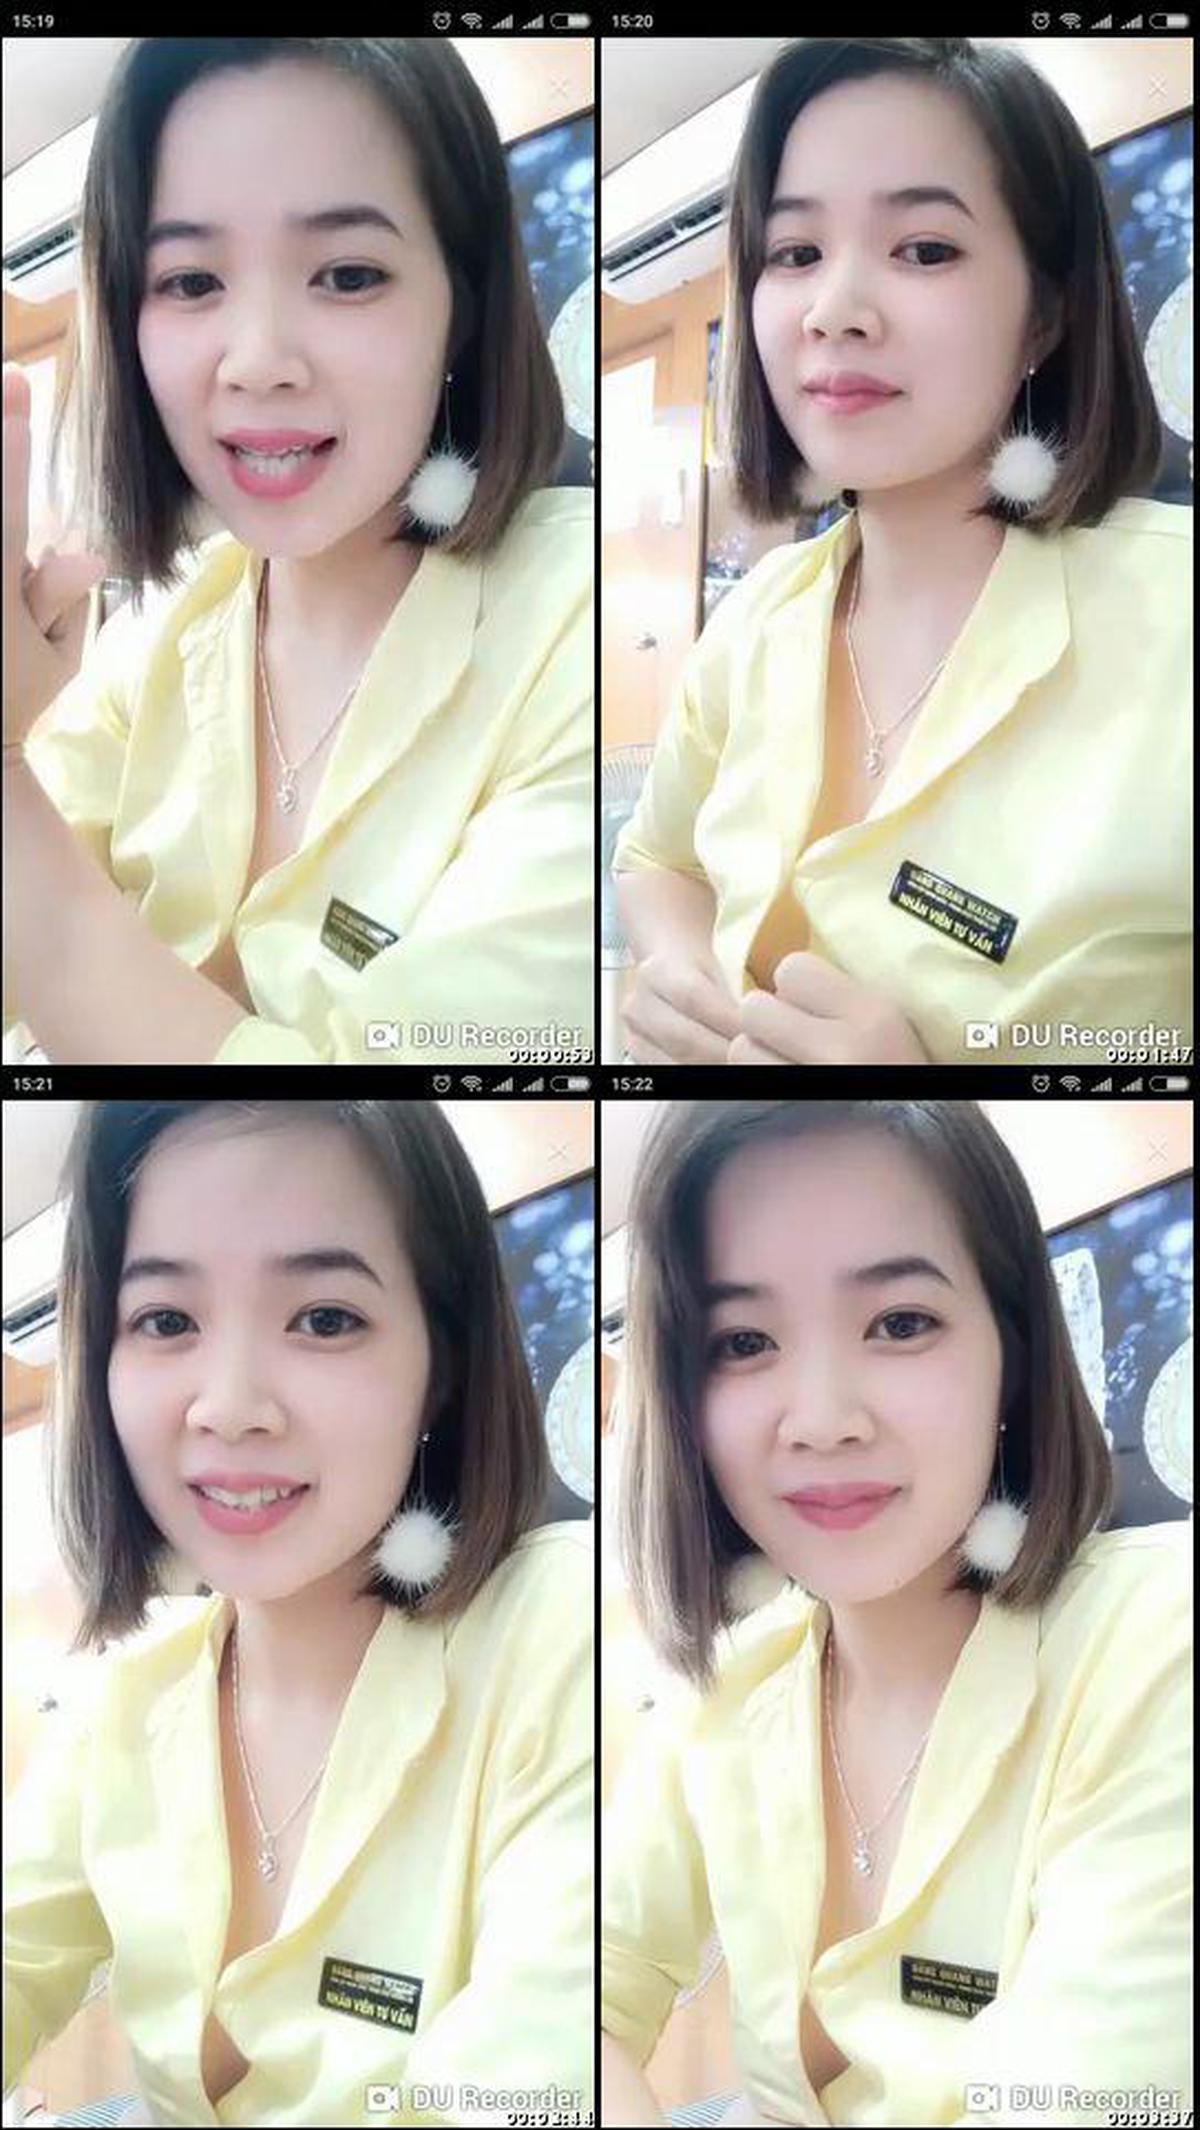 digi-tents_webcam_357 [Non] De belles filles font une livraison de maona électrique et de pisse ! !! , 18 ans cheveux noirs bonnet E ☆ chat en direct